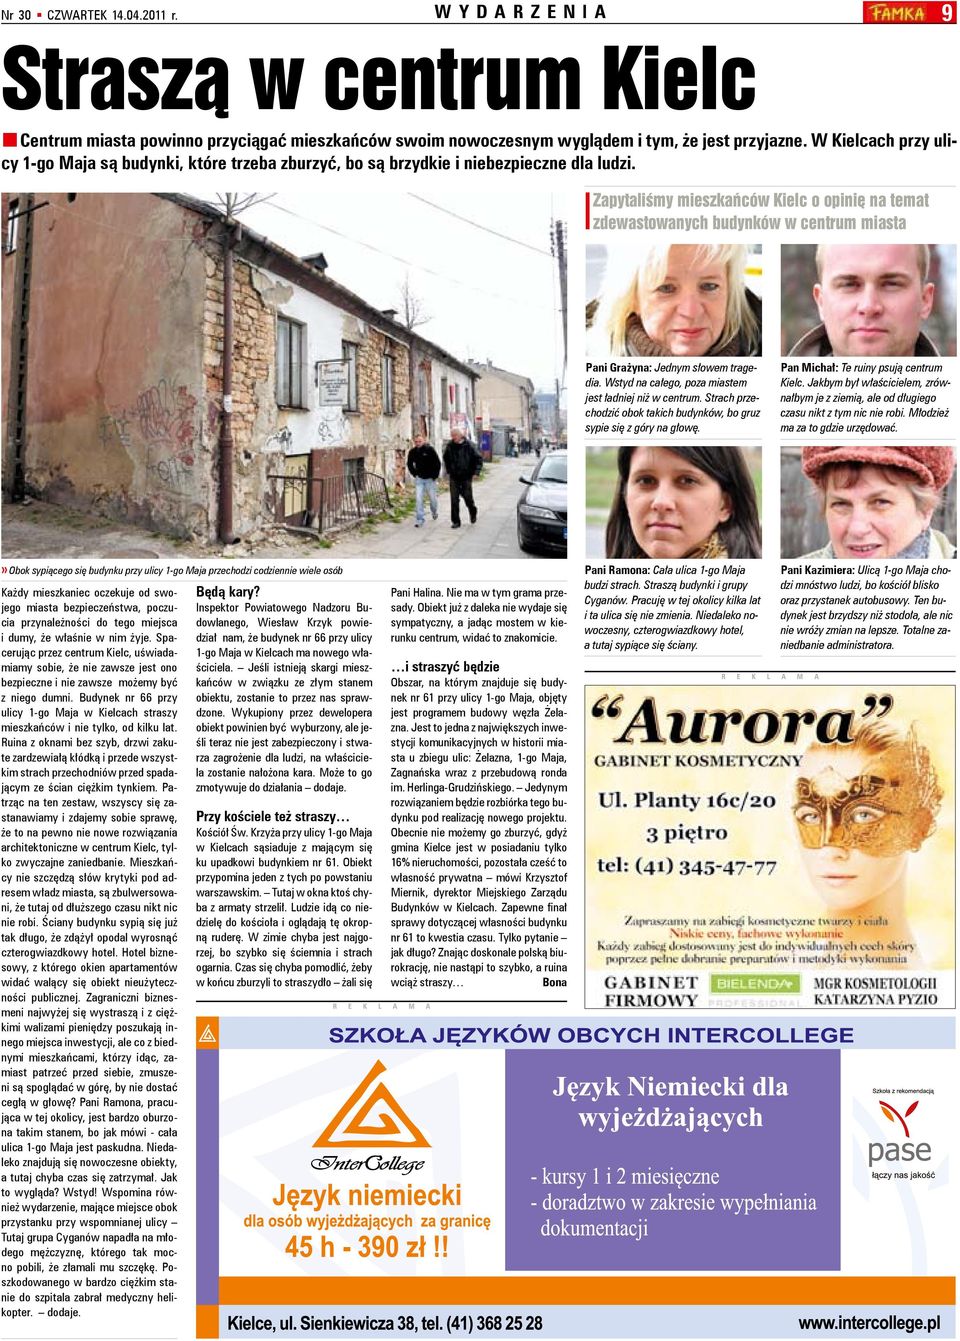 zapytaliśmy mieszkańców Kielc o opinię na temat zdewastowanych budynków w centrum miasta Pani Grażyna: Jednym słowem tragedia. Wstyd na całego, poza miastem jest ładniej niż w centrum.